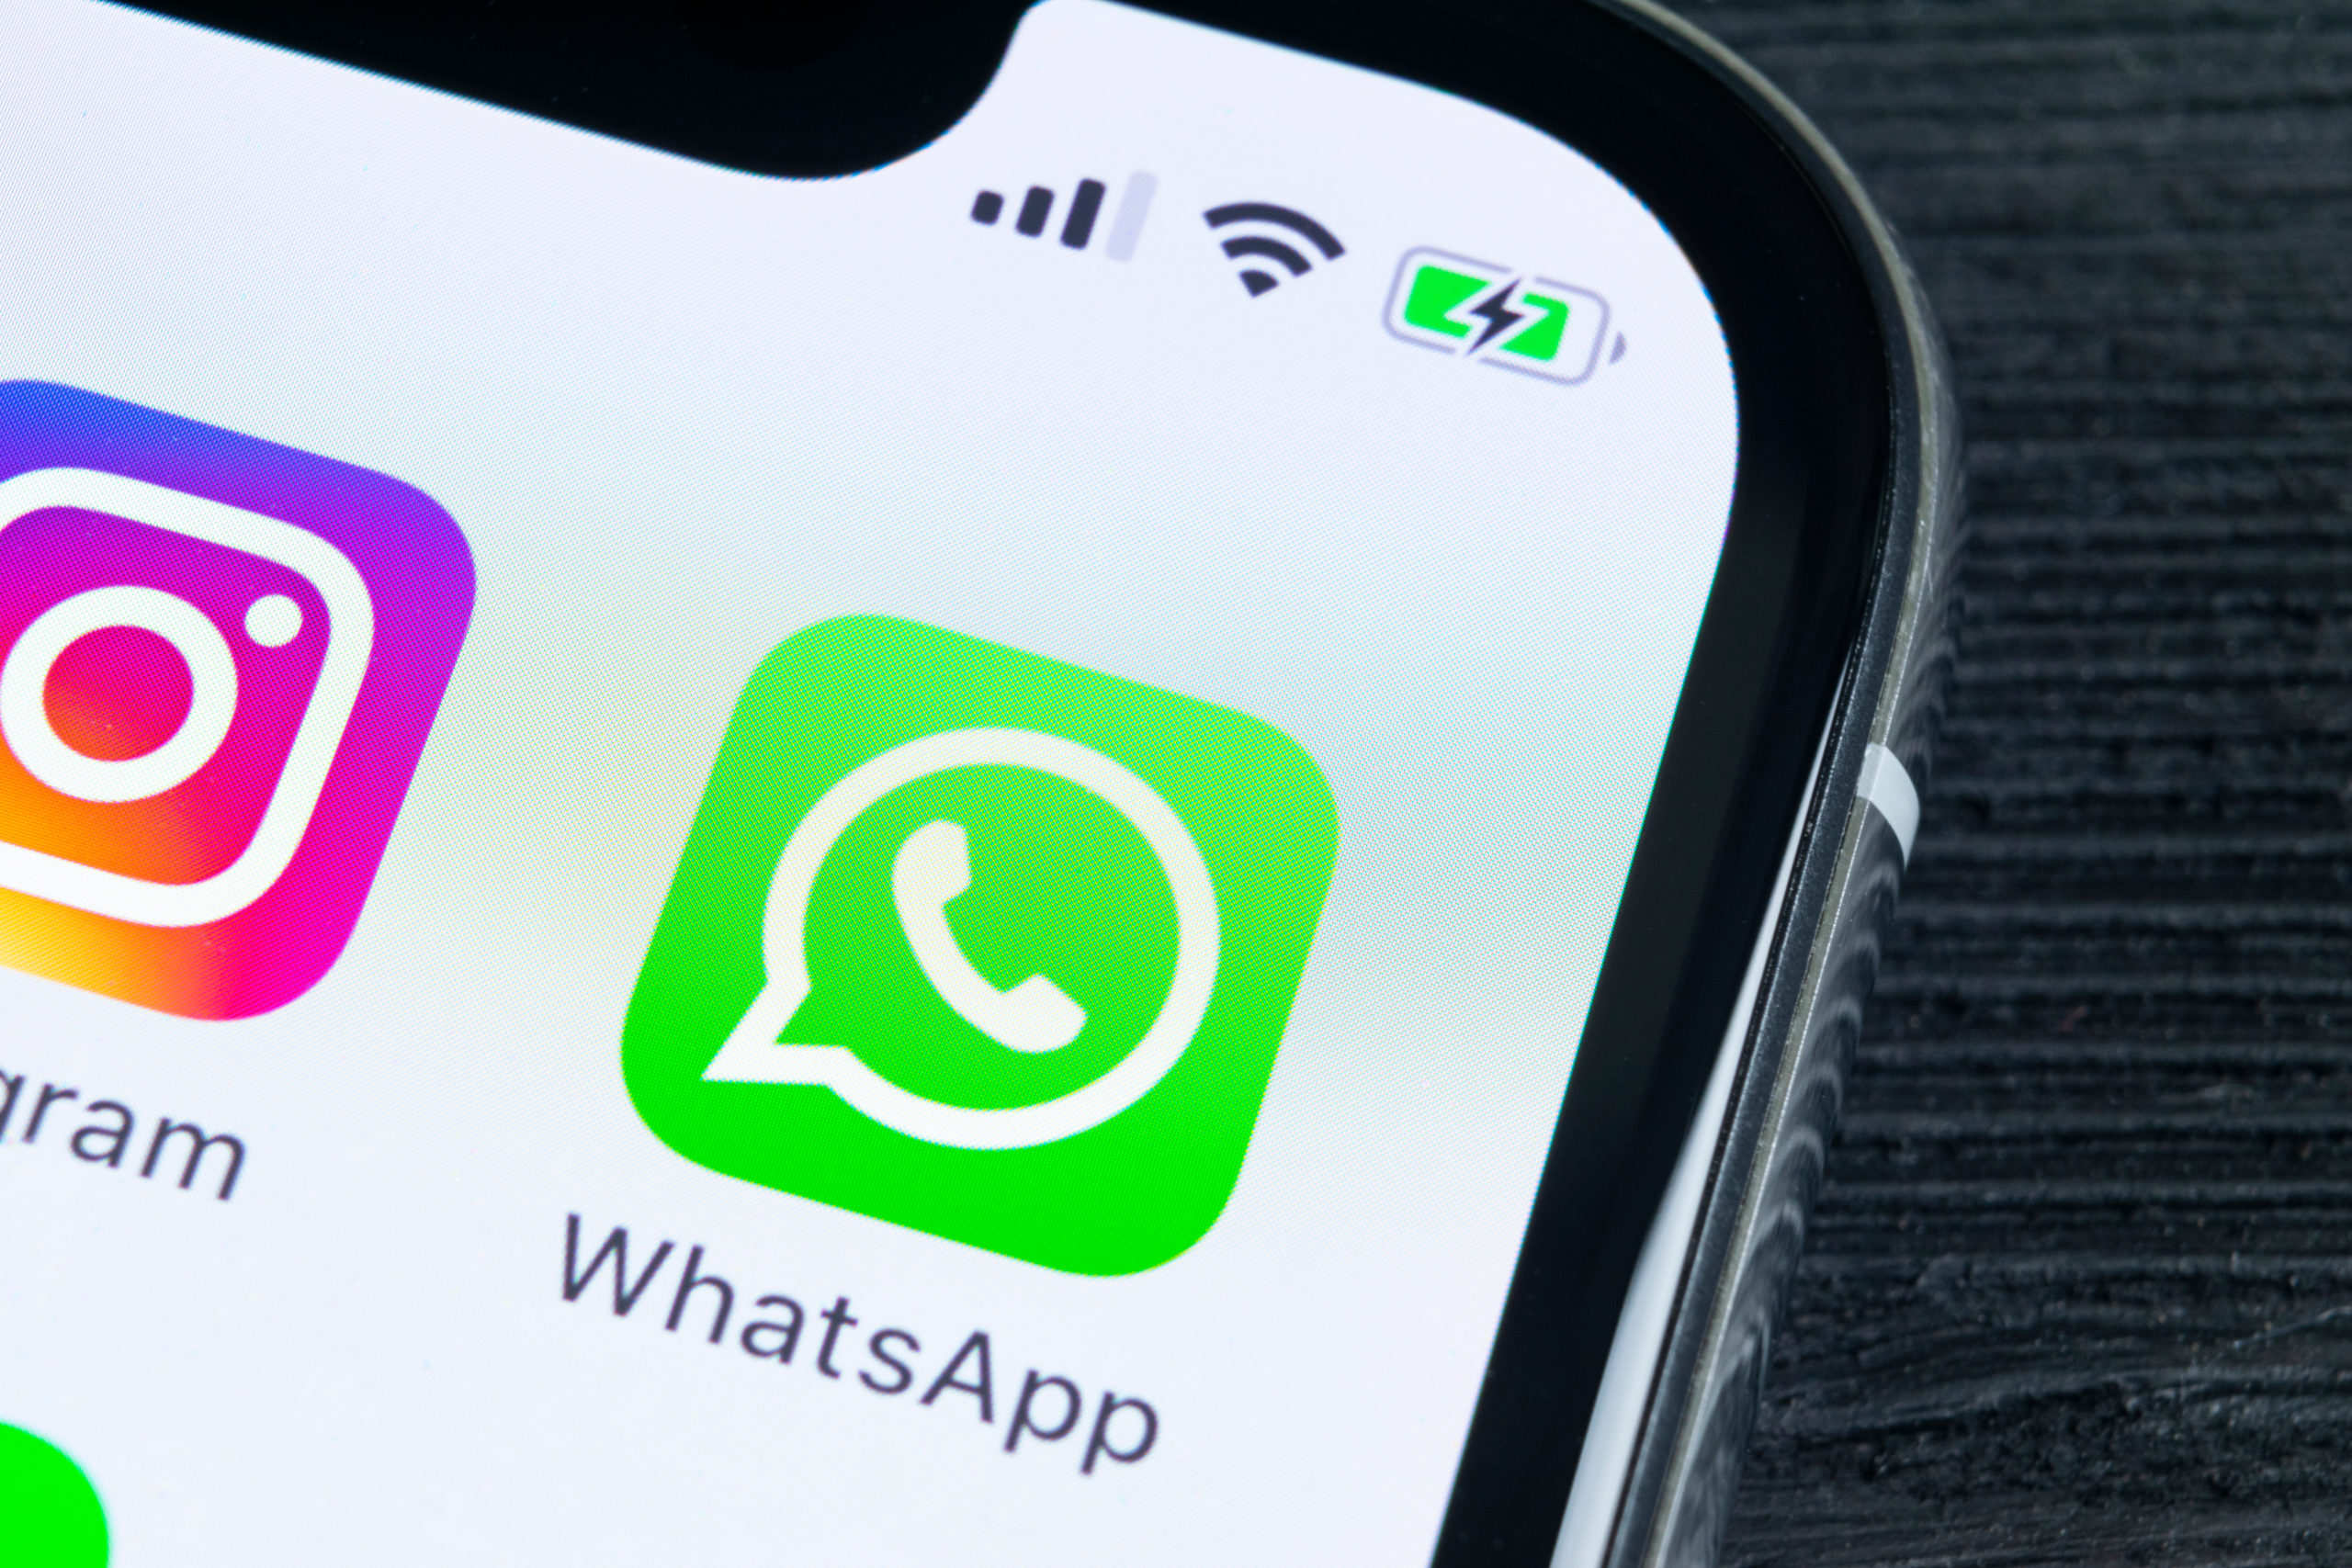 Los dueños de iPhone son mimados por WhatsApp y obtienen 6 nuevas funciones